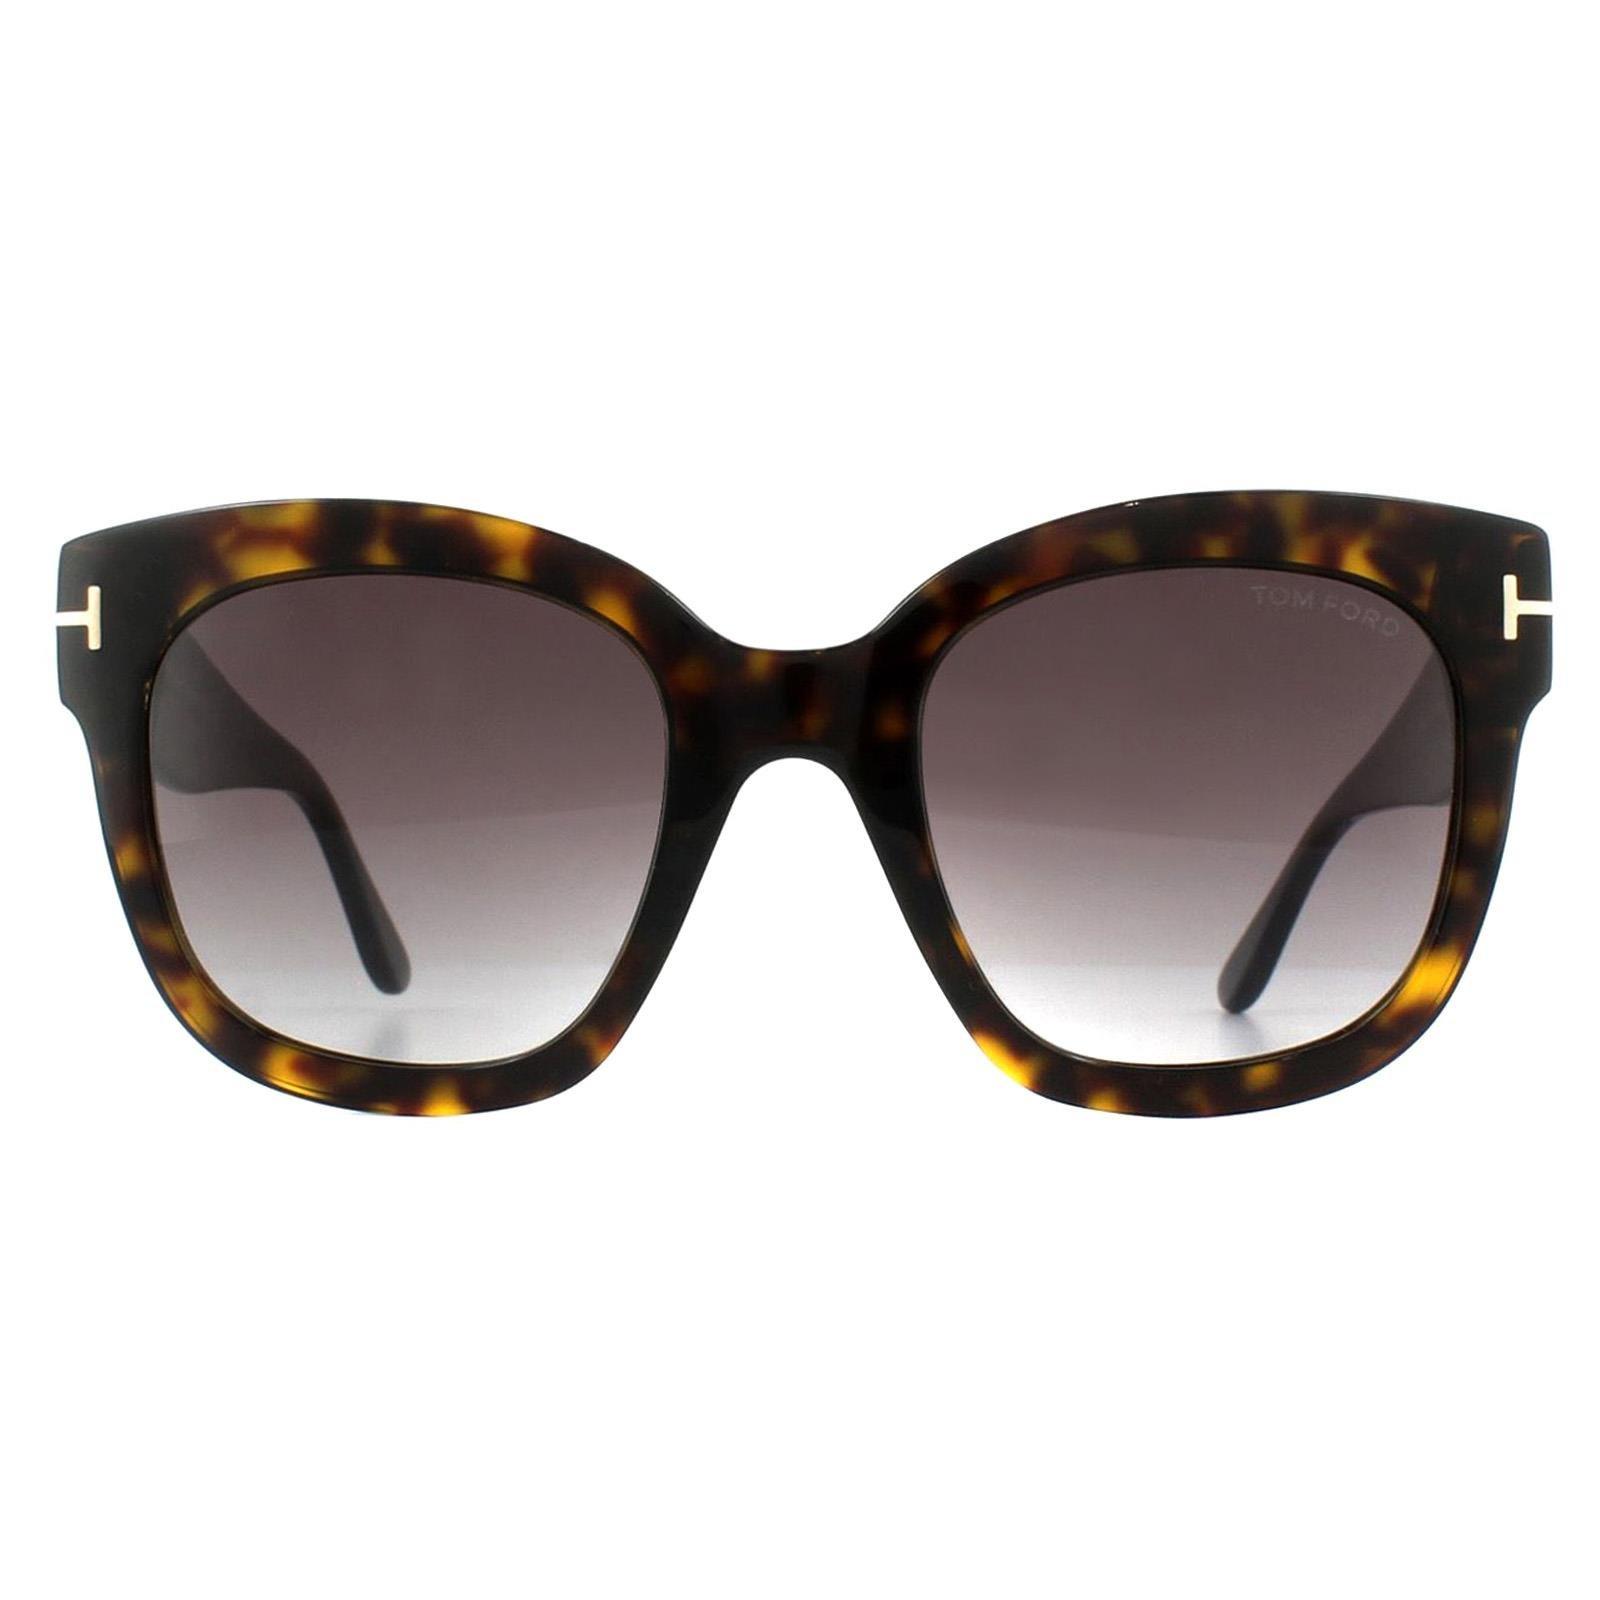 Квадратные темные солнцезащитные очки Havana Bordeaux с градиентом Tom Ford, коричневый f5m 52t майнер б у